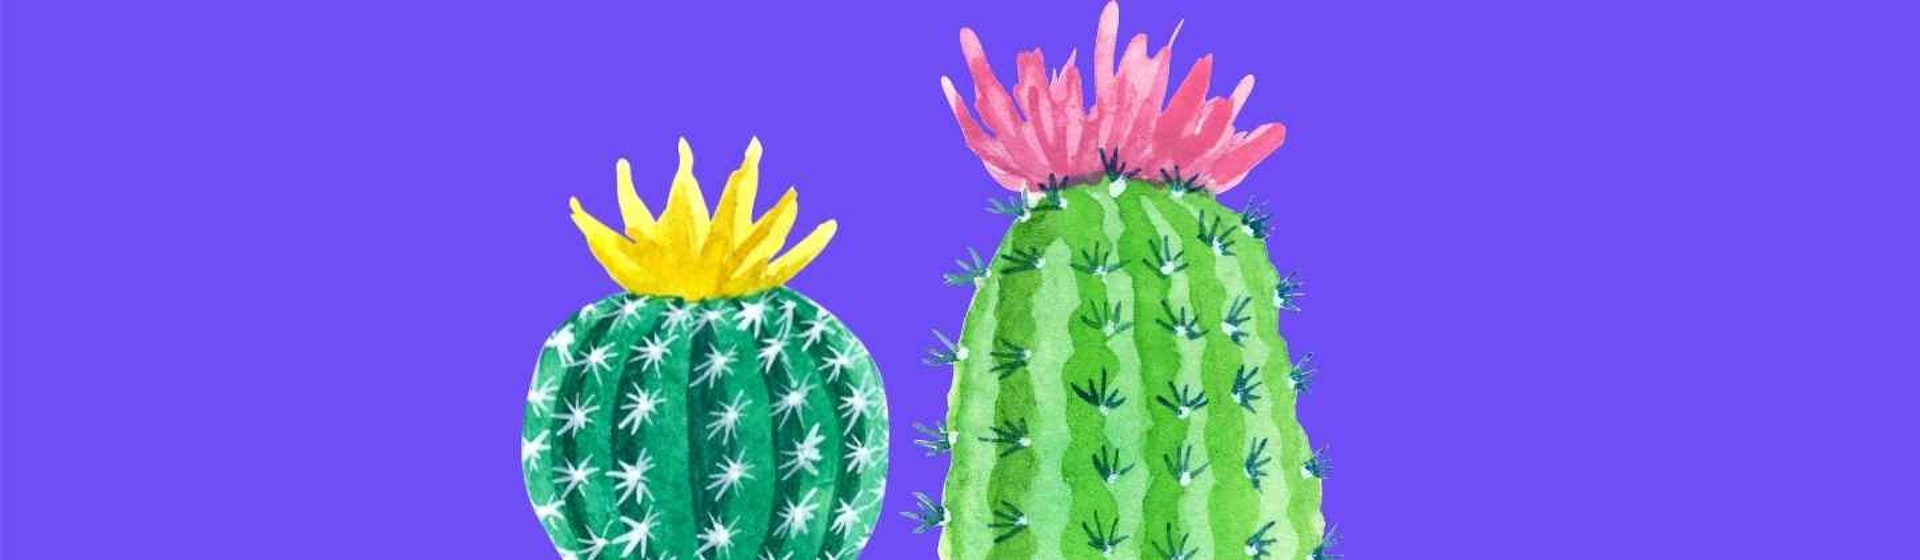 ¿Cuánto sabes de cactus y suculentas? Datos que no conocías sobre estas plantas de moda